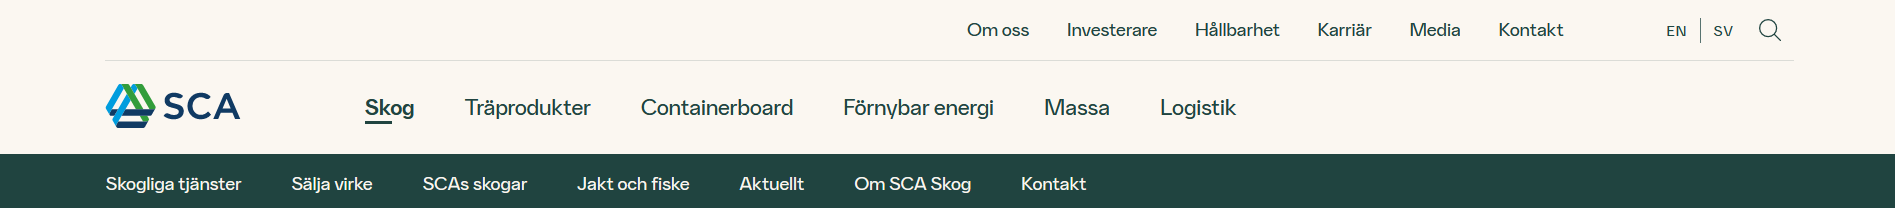 Navigeringen på sca.com.